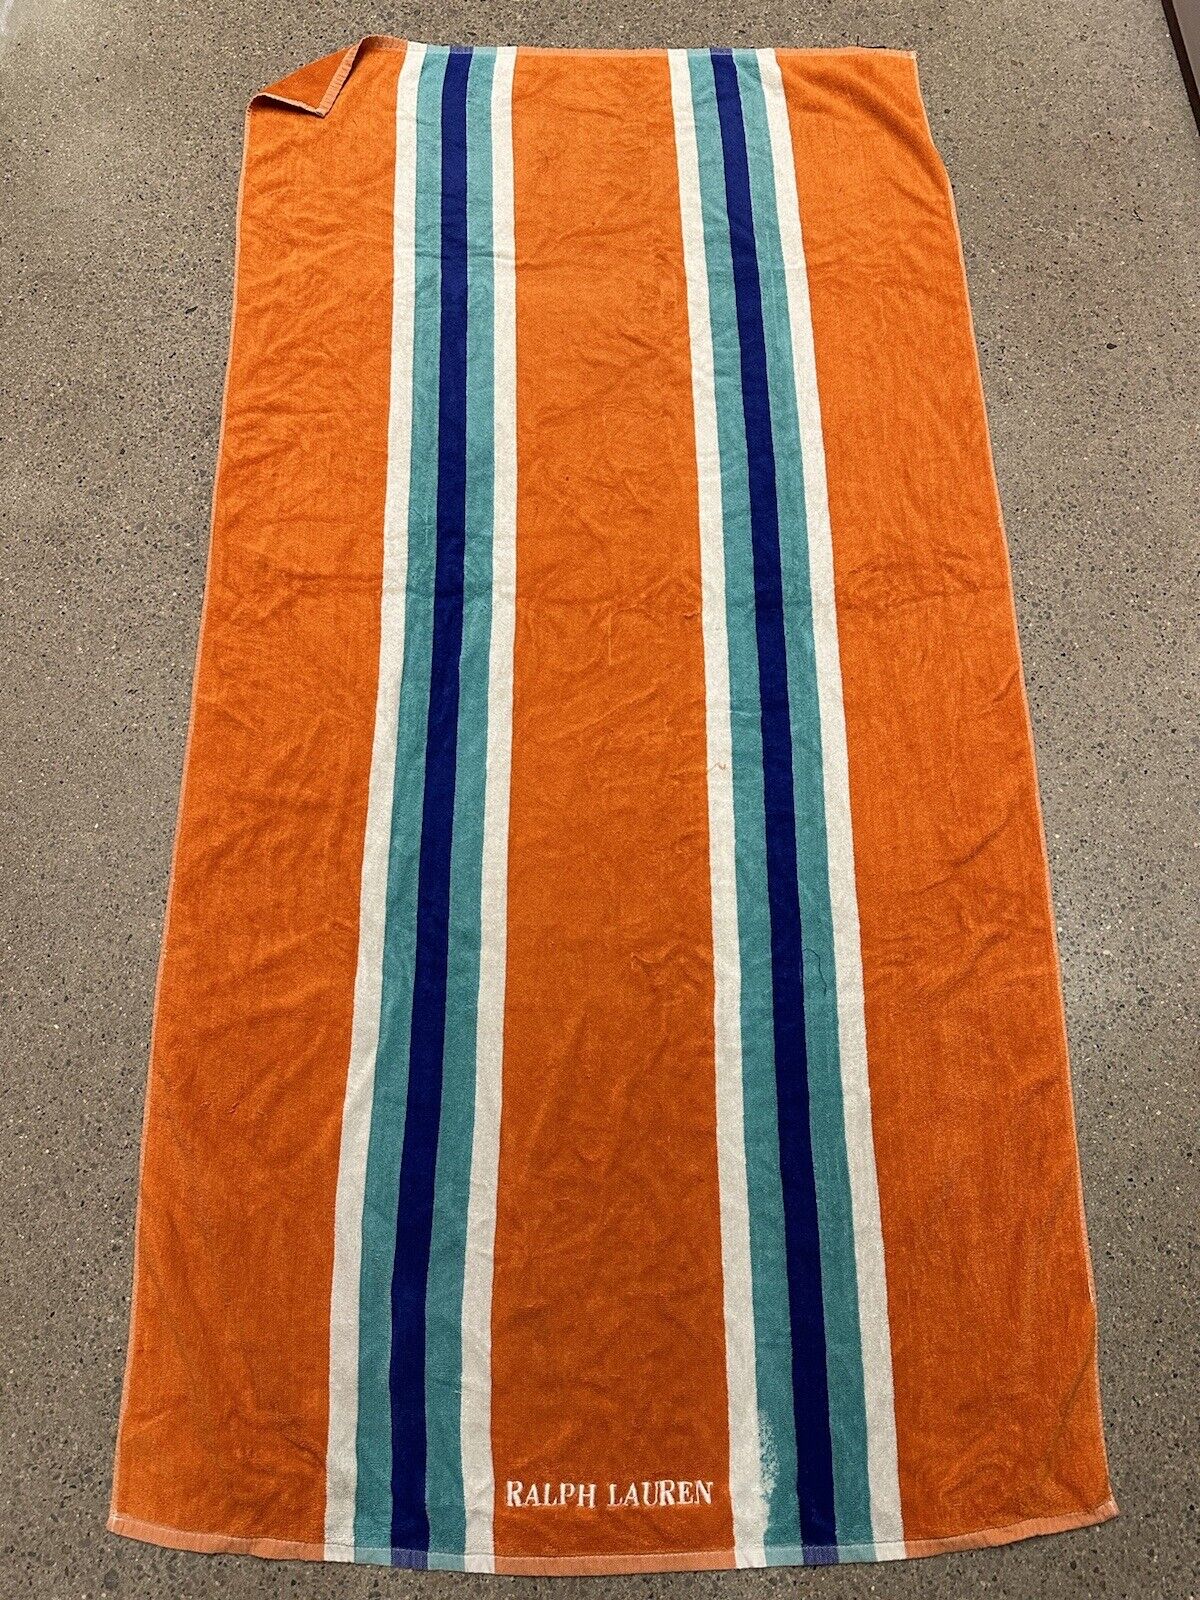 Vintage Ralph Lauren Beach Towel